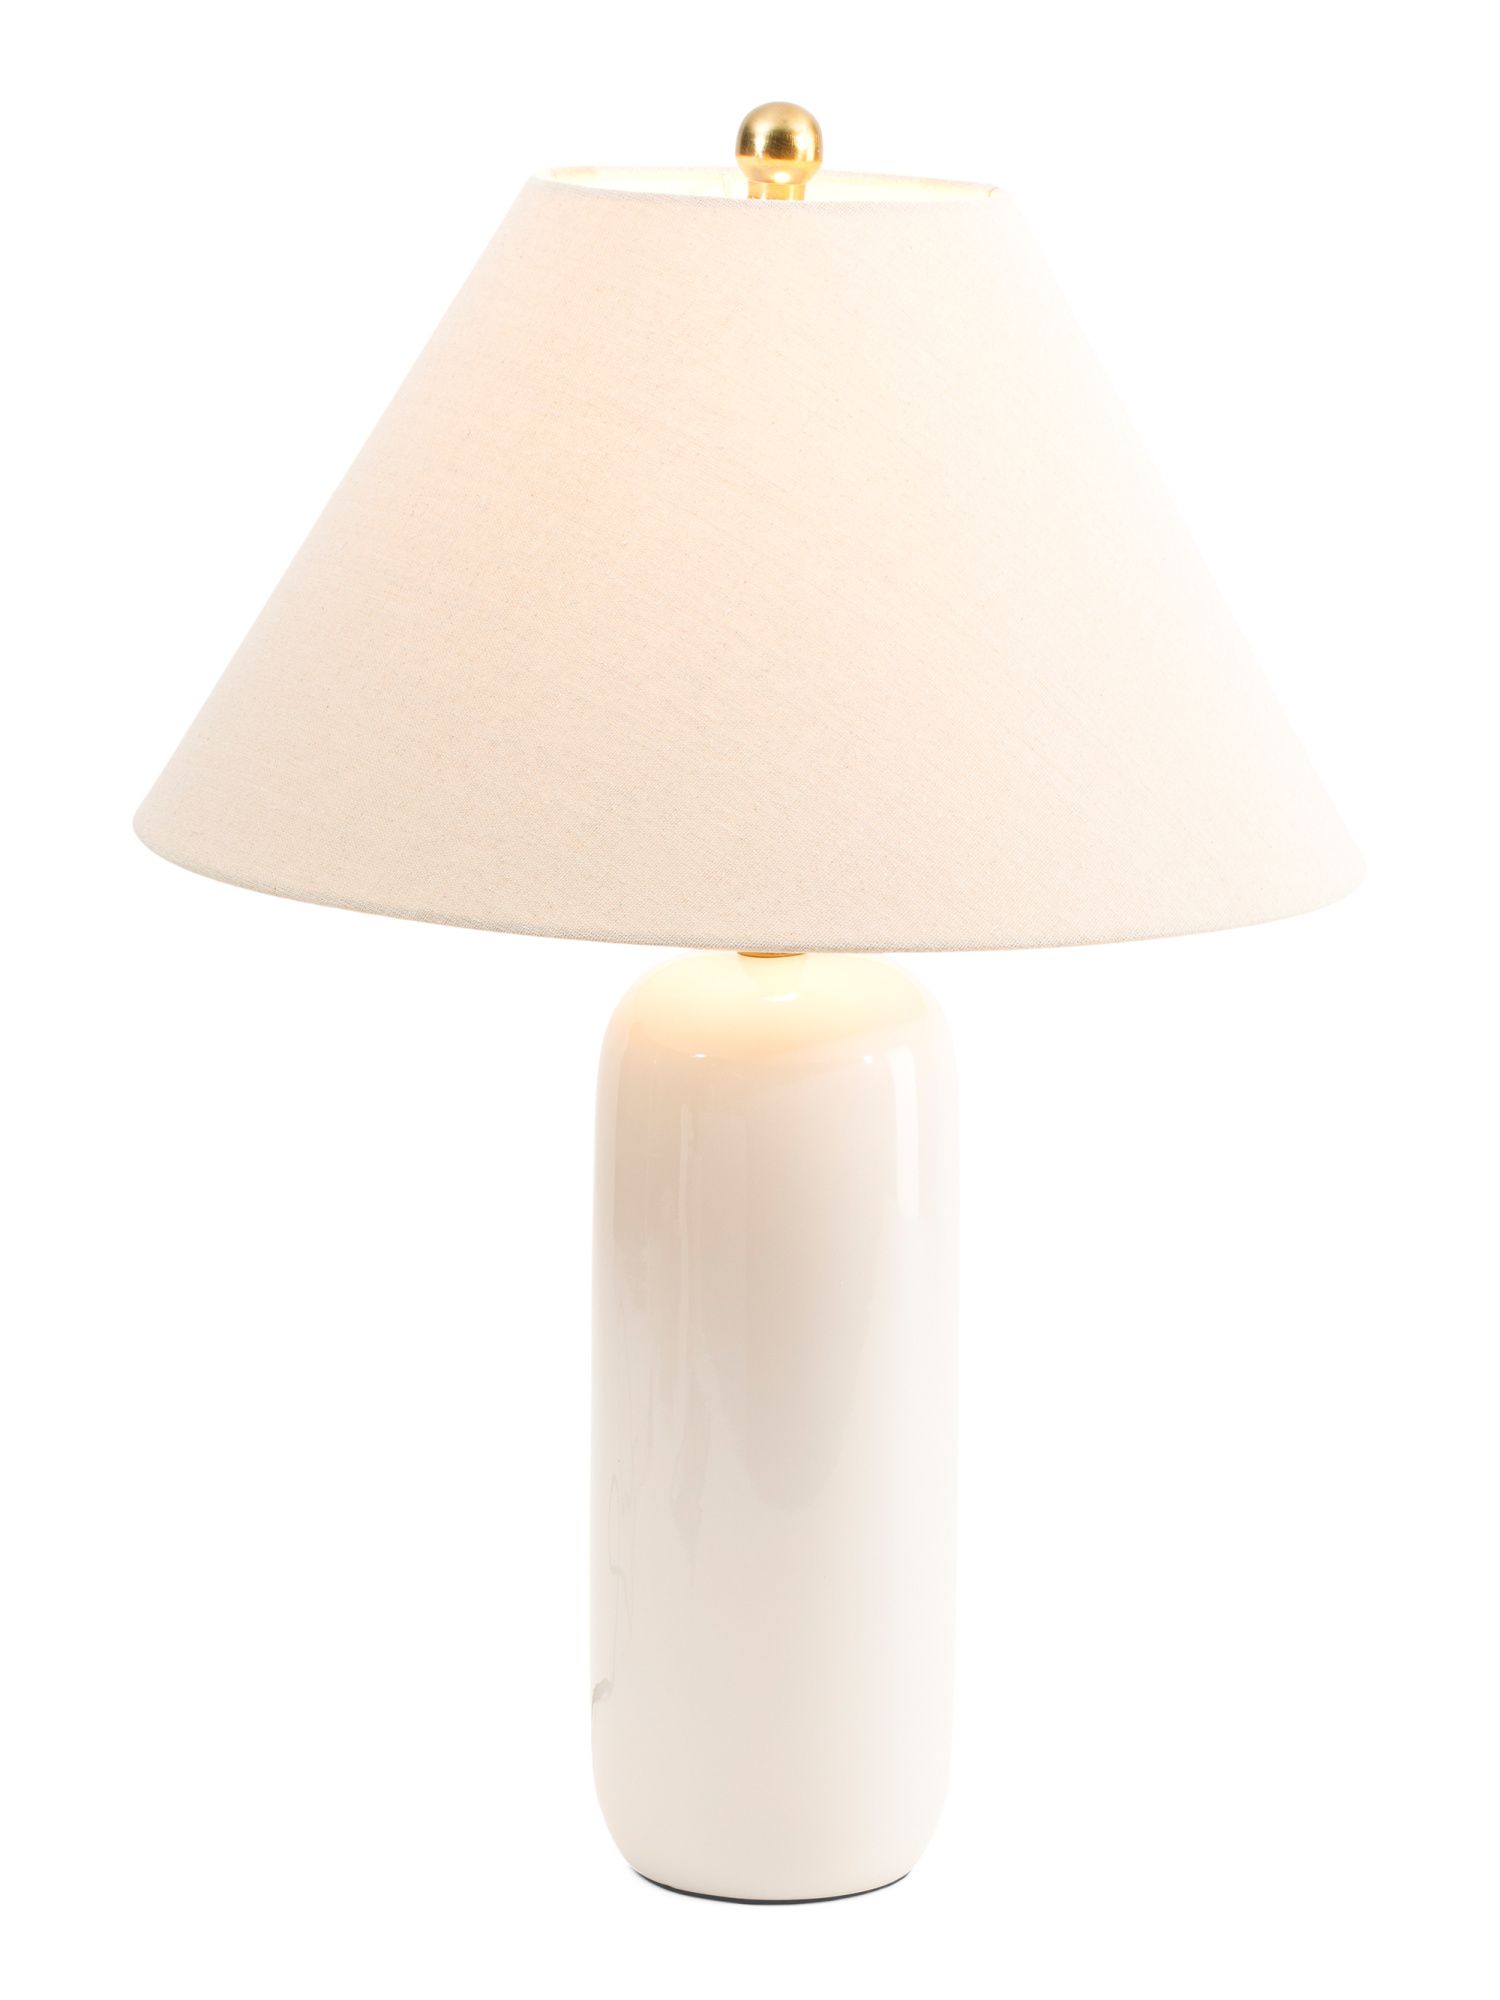 32in Viper Matte Ceramic Table Lamp | TJ Maxx